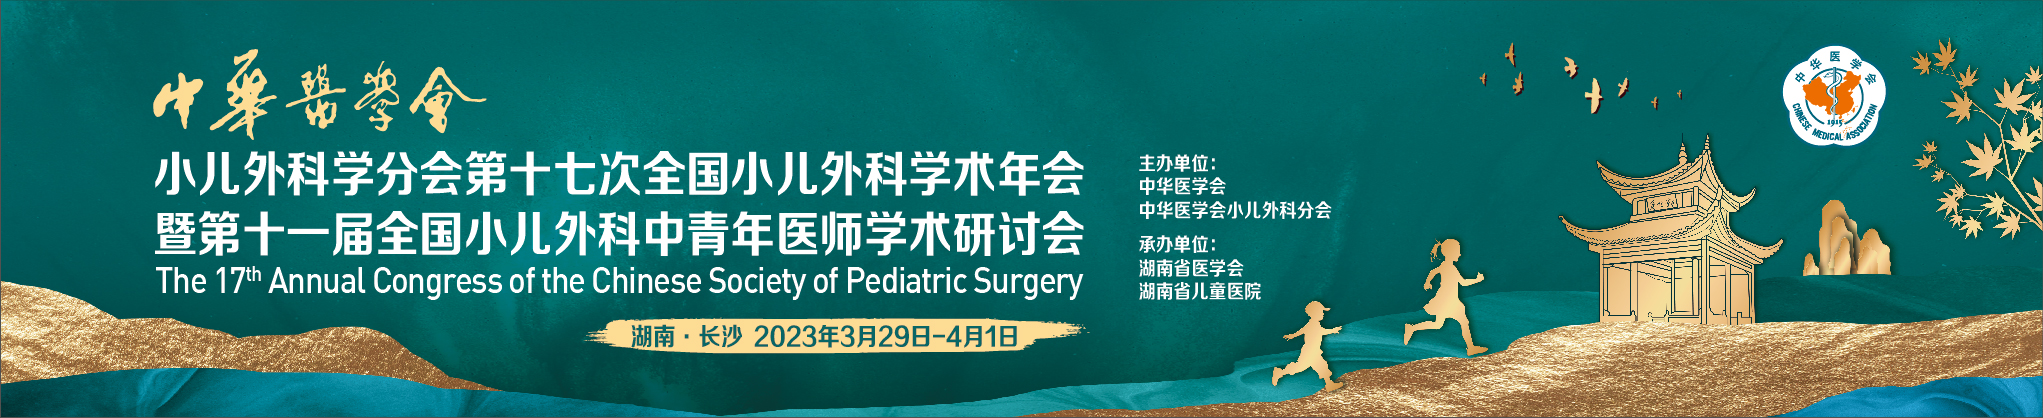 中华医学会小儿外科学分会第十七次全国小儿外科学术年会暨第十一届全国小儿外科中青年医师学术研讨会